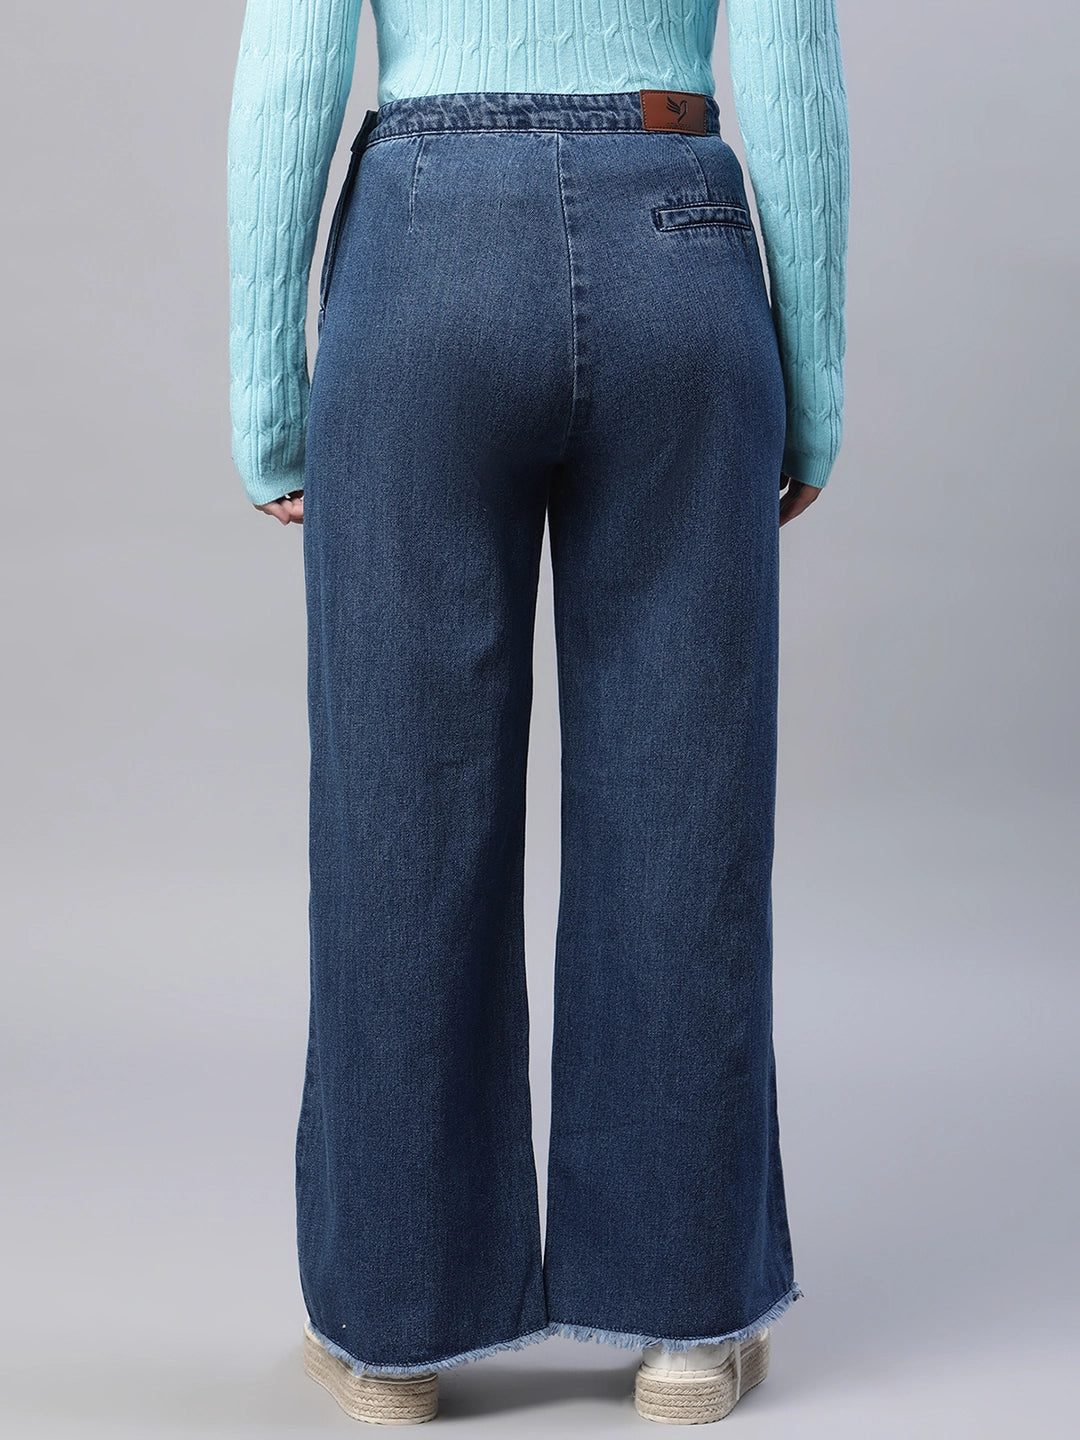 women blue denim jeans